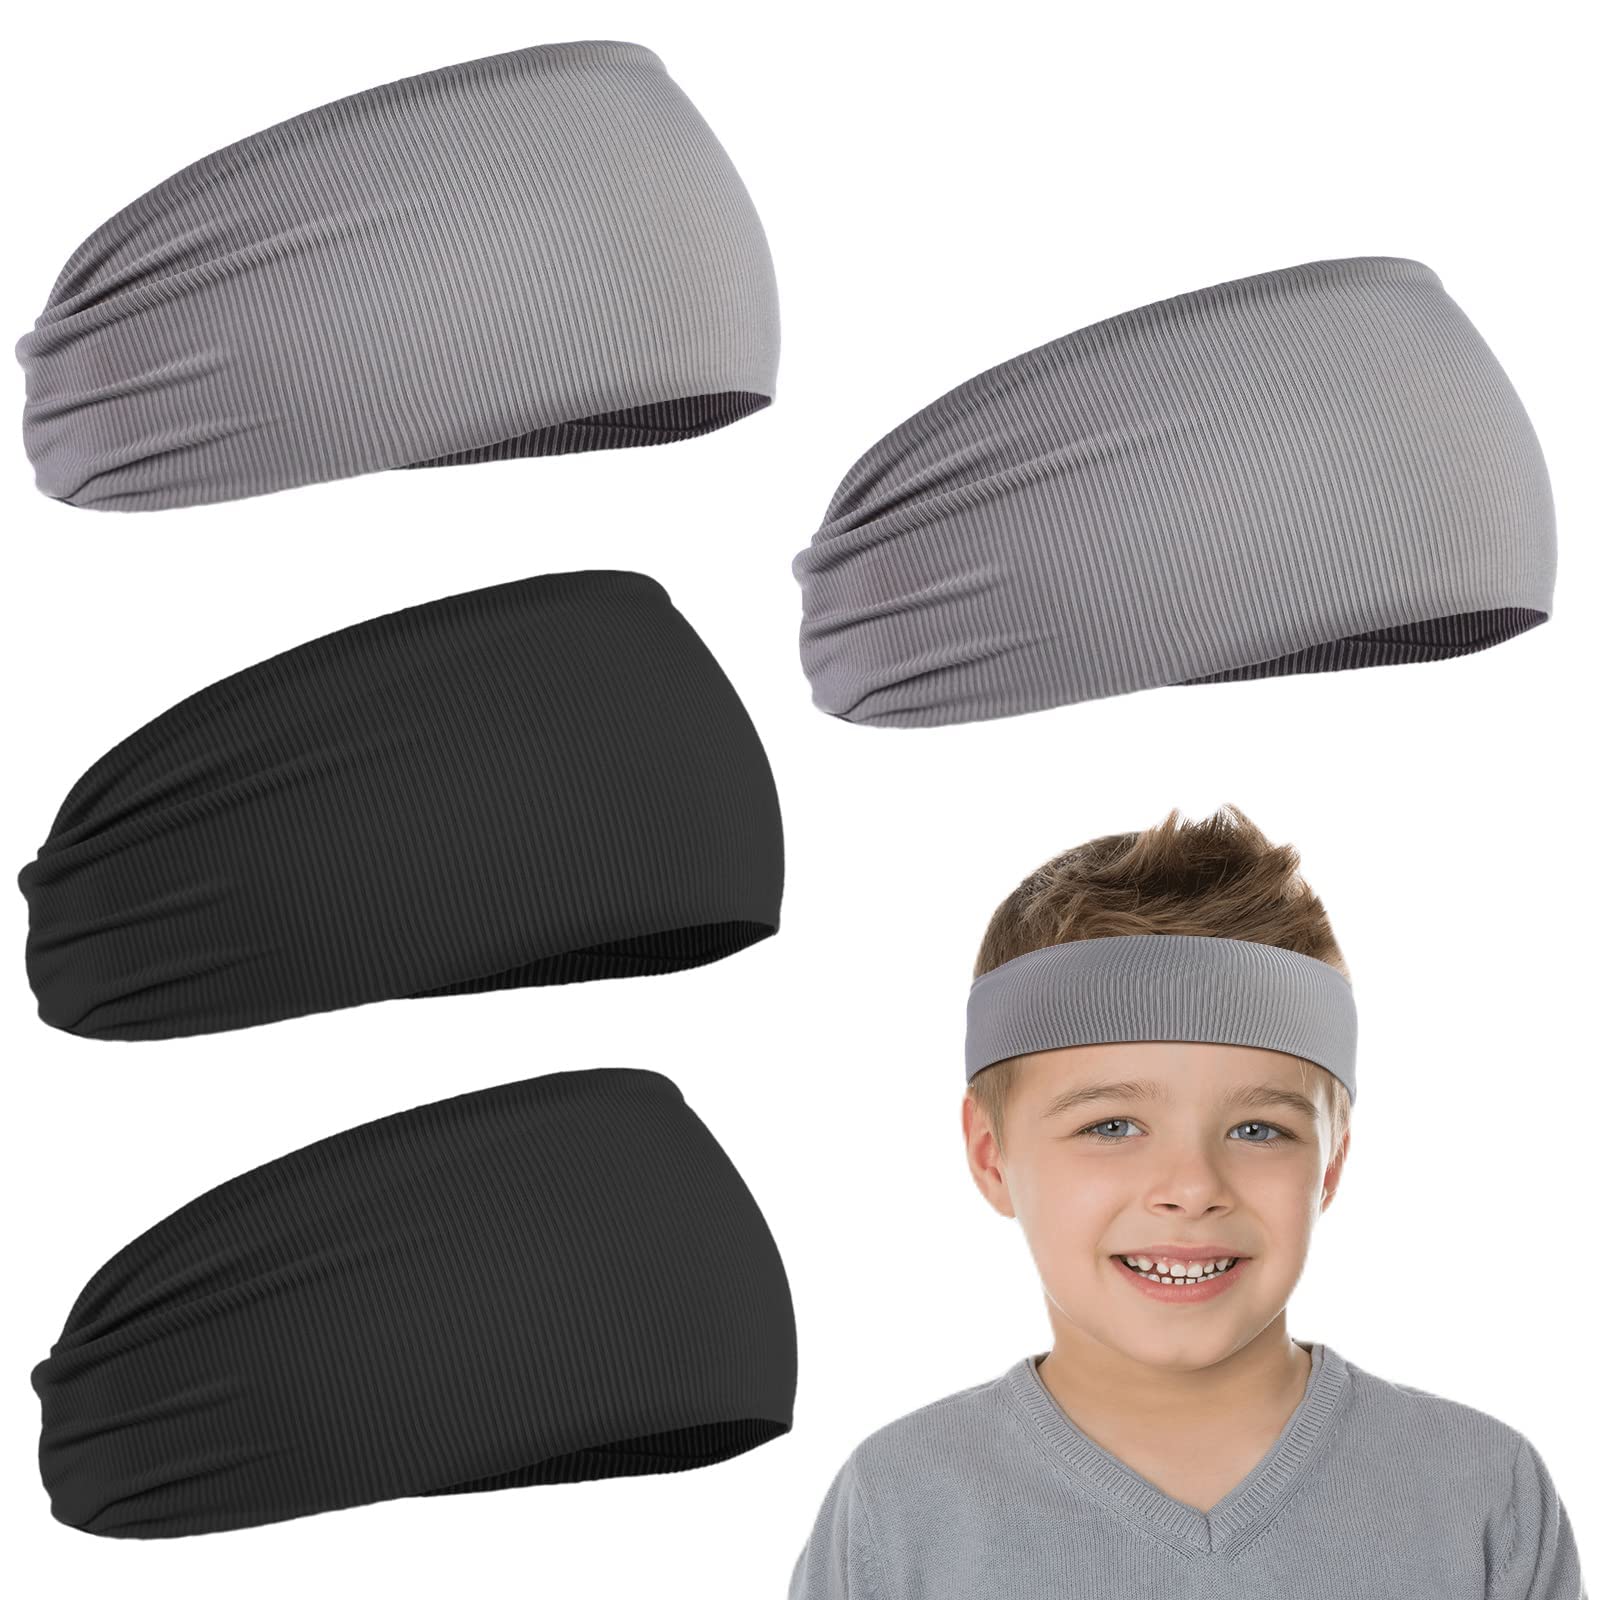 Sporty Men's Headbands - Set of 4